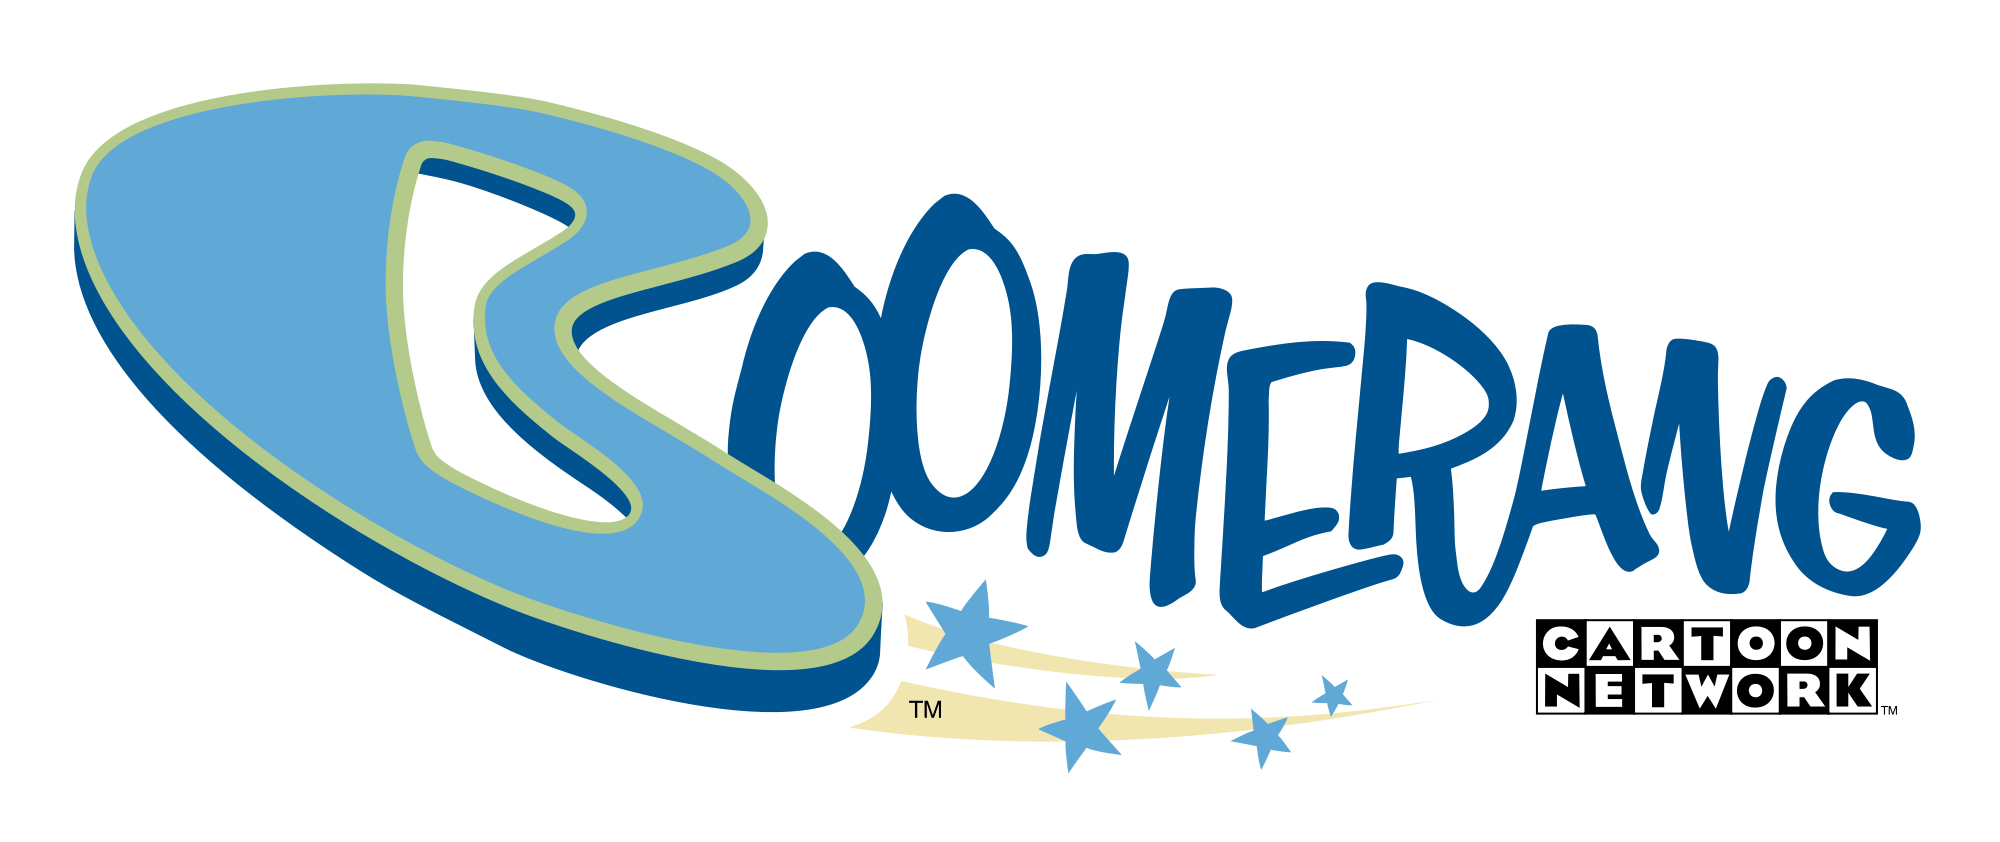 Boomerang Us Logo - Boomerang US logo.png. Macy's Thanksgiving Day Parade